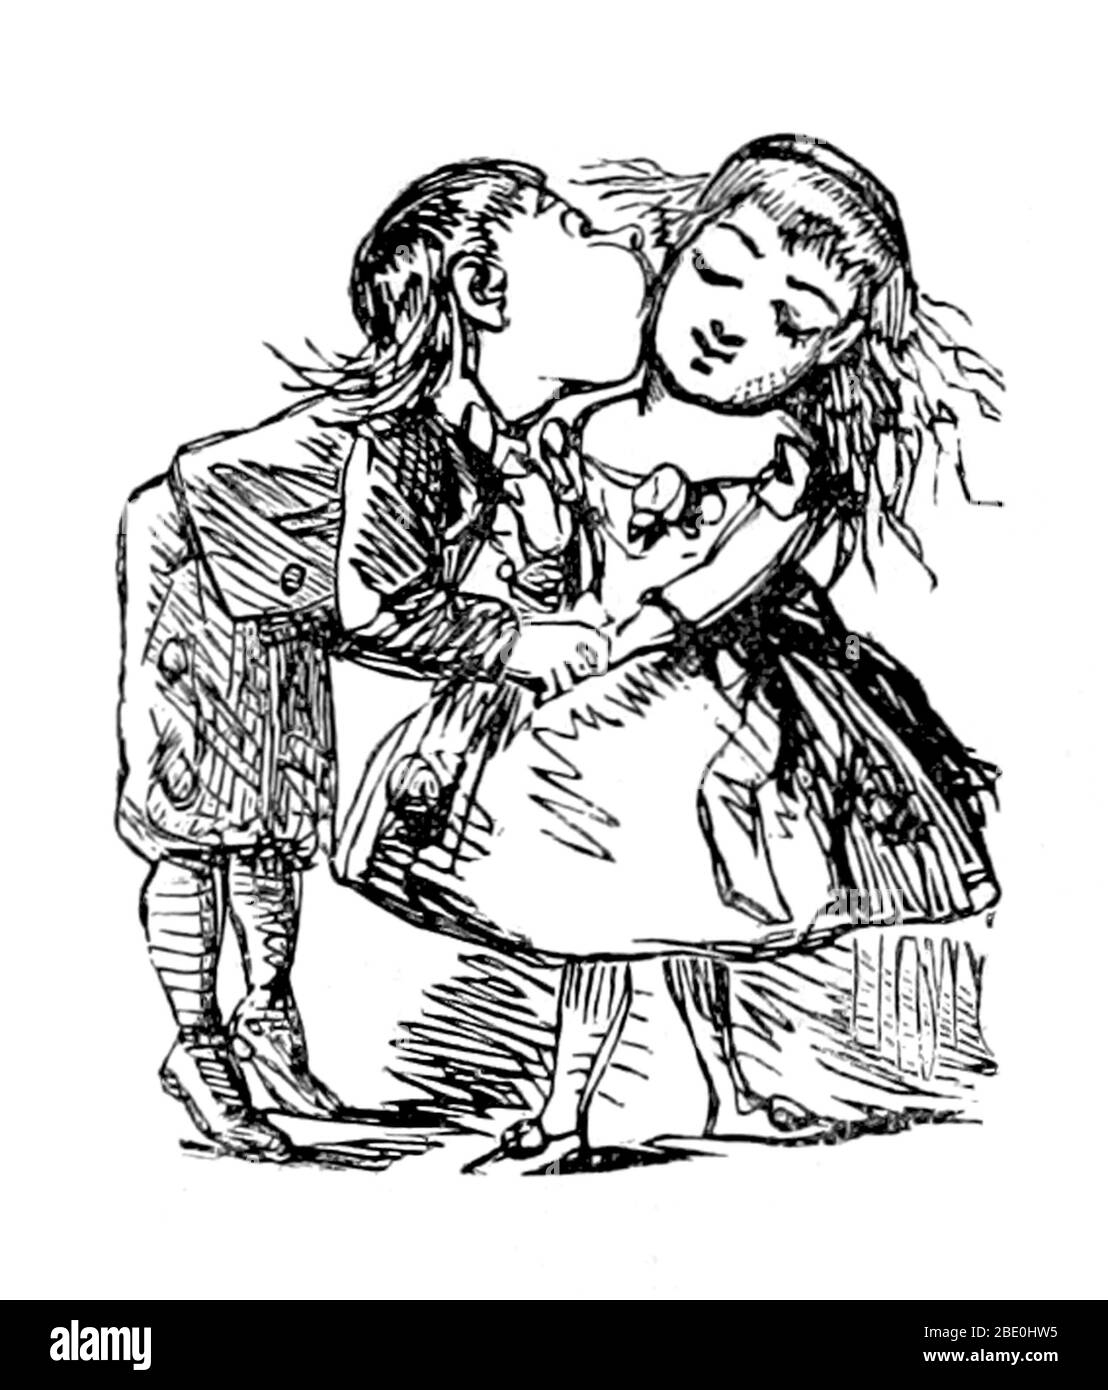 El día de San Valentín, también conocido como el día de San Valentín o la Fiesta de San Valentín, es un día festivo que se observa el 14 de febrero de cada año. Se celebra en muchos países de todo el mundo, aunque no es un día festivo en la mayoría de ellos. El día se asoció por primera vez con el amor romántico en la Europa medieval, cuando floreció la tradición de amor cortesano. En la Inglaterra del siglo XVIII, evolucionó hasta convertirse en una ocasión en la que los amantes expresaban su amor unos por otros presentando flores, ofreciendo artículos de confitería y enviando tarjetas de felicitación. Los símbolos del día de San Valentín que se utilizan hoy incluyen el corazón en forma de cabo Foto de stock